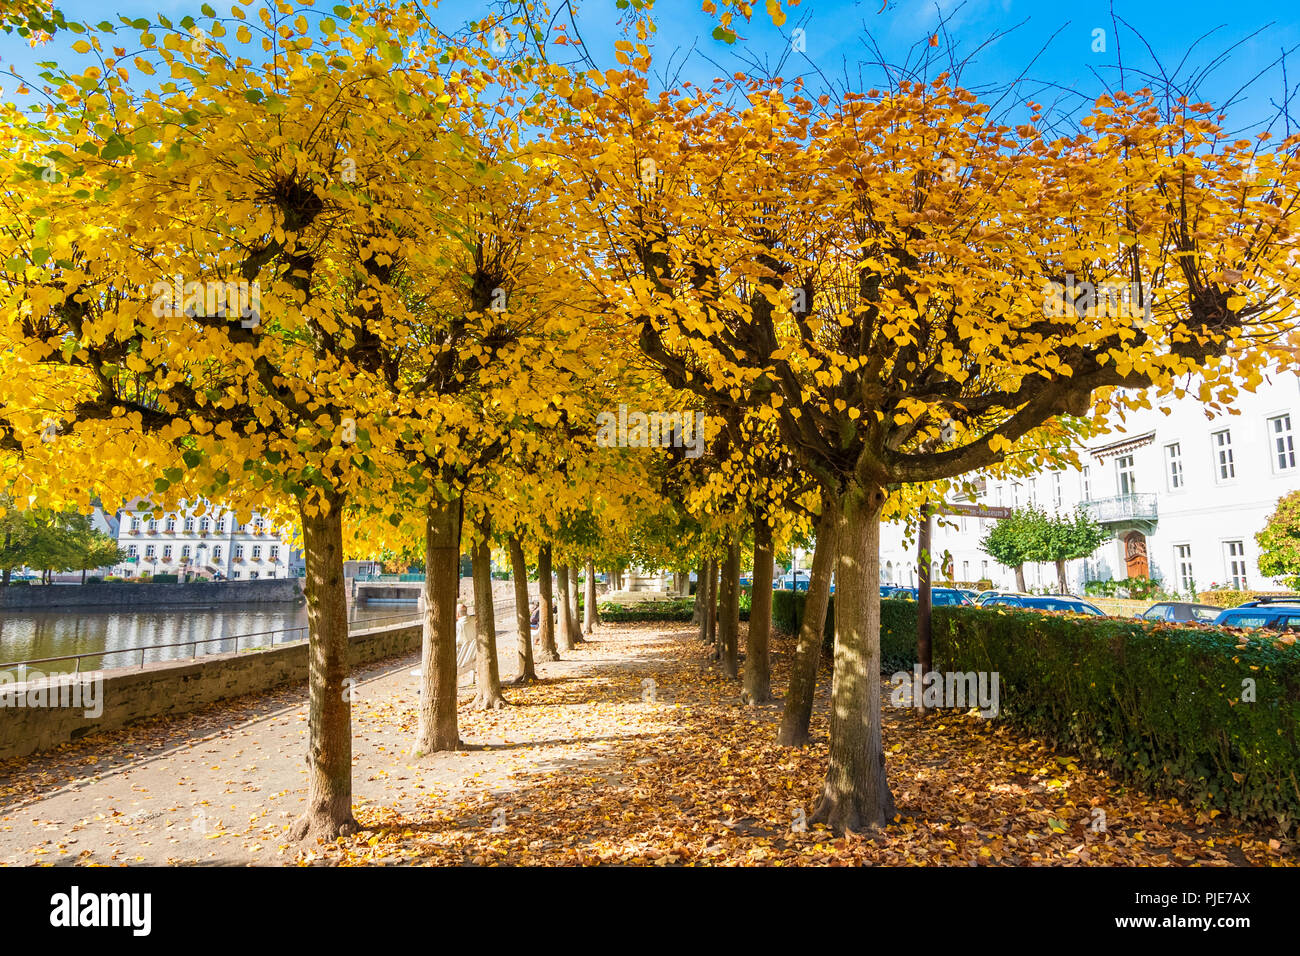 Une belle linden chemin bordé d'arbres dans un parc en Bad Karlshafen, Allemagne. Les arbres avec des feuilles, un ciel bleu, blanc des bancs et le bassin du port... Banque D'Images